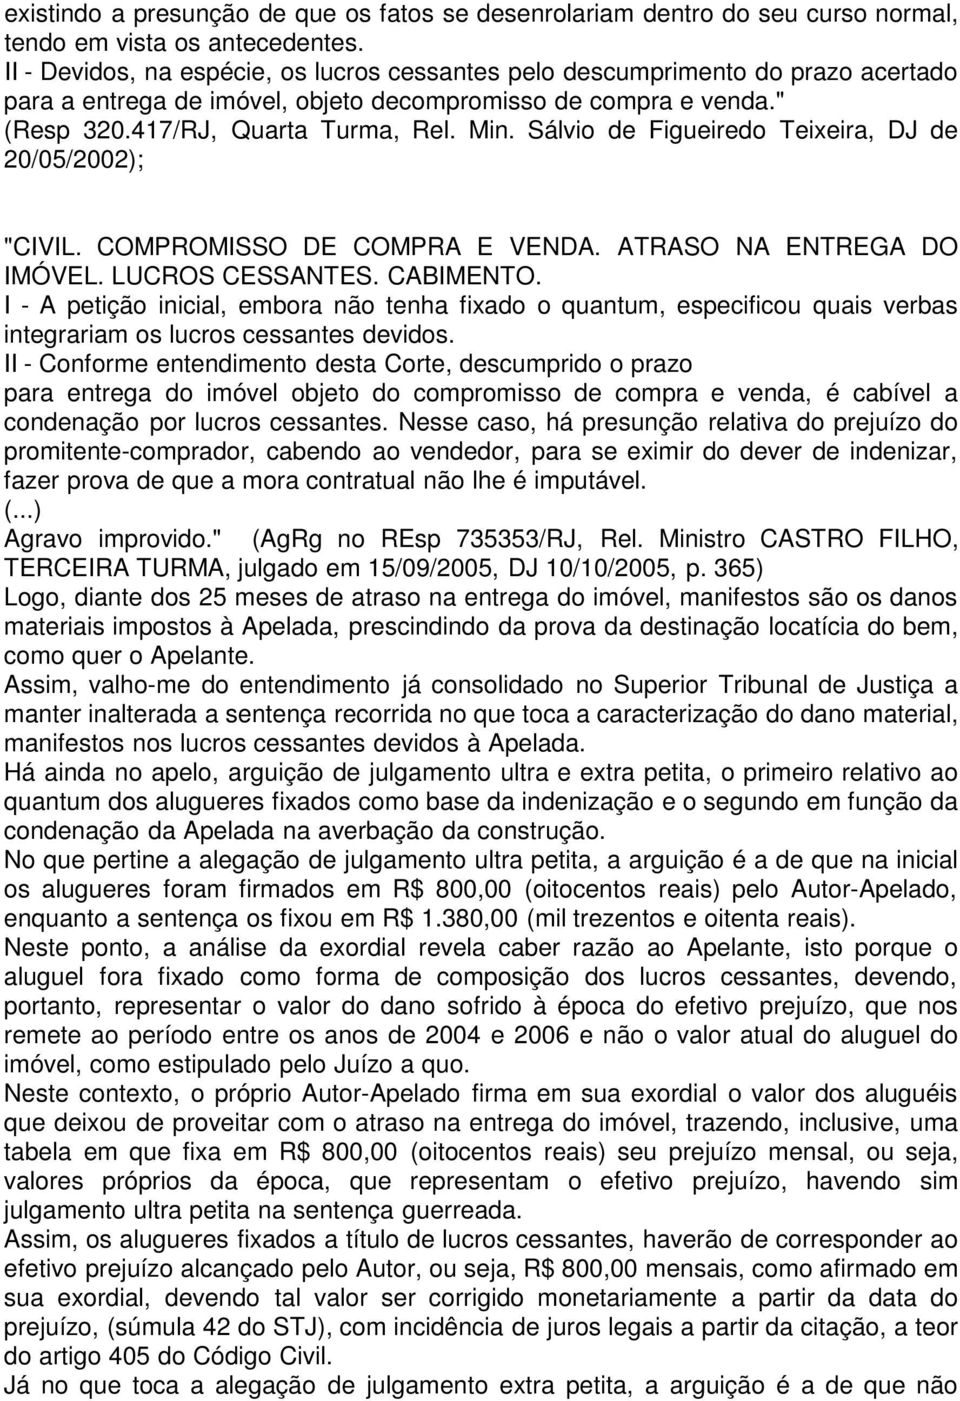 Sálvio de Figueiredo Teixeira, DJ de 20/05/2002); "CIVIL. COMPROMISSO DE COMPRA E VENDA. ATRASO NA ENTREGA DO IMÓVEL. LUCROS CESSANTES. CABIMENTO.